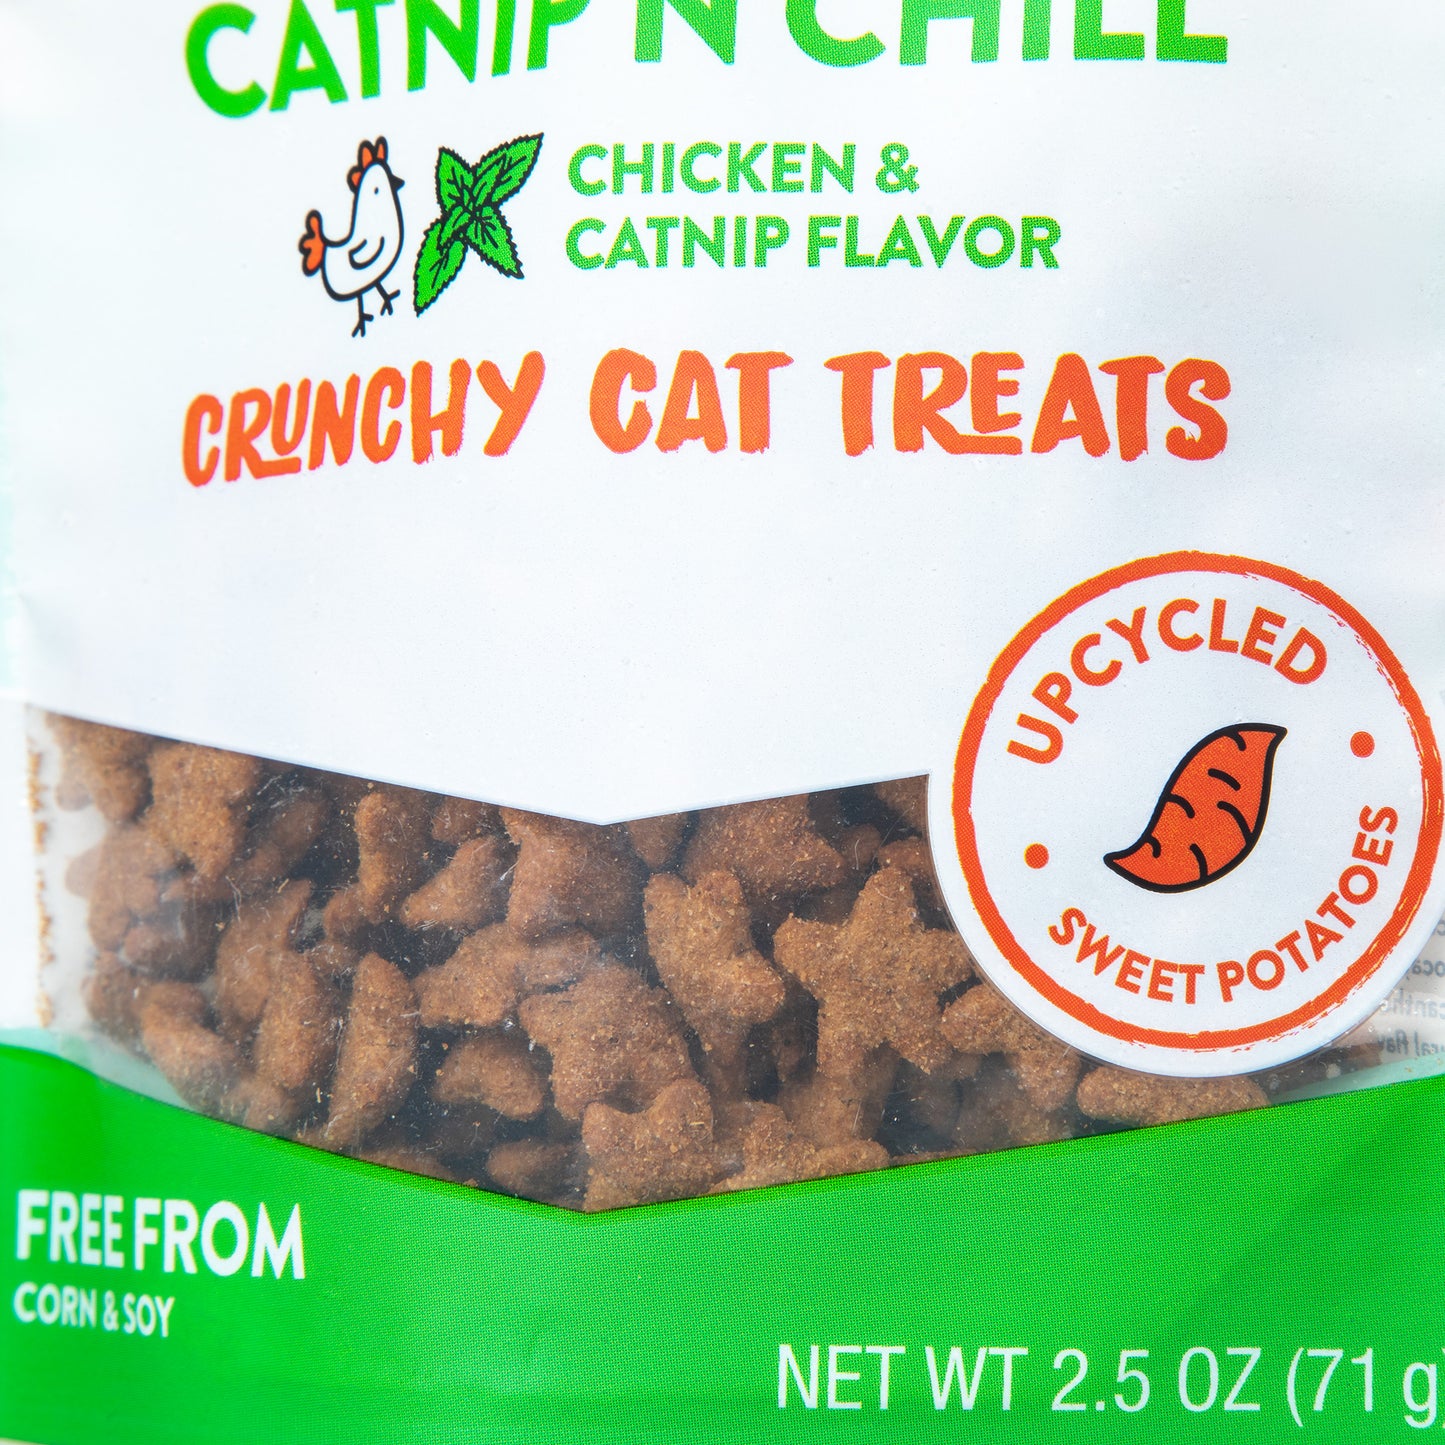 Shameless Pets&reg; Crunchy Cat Treats